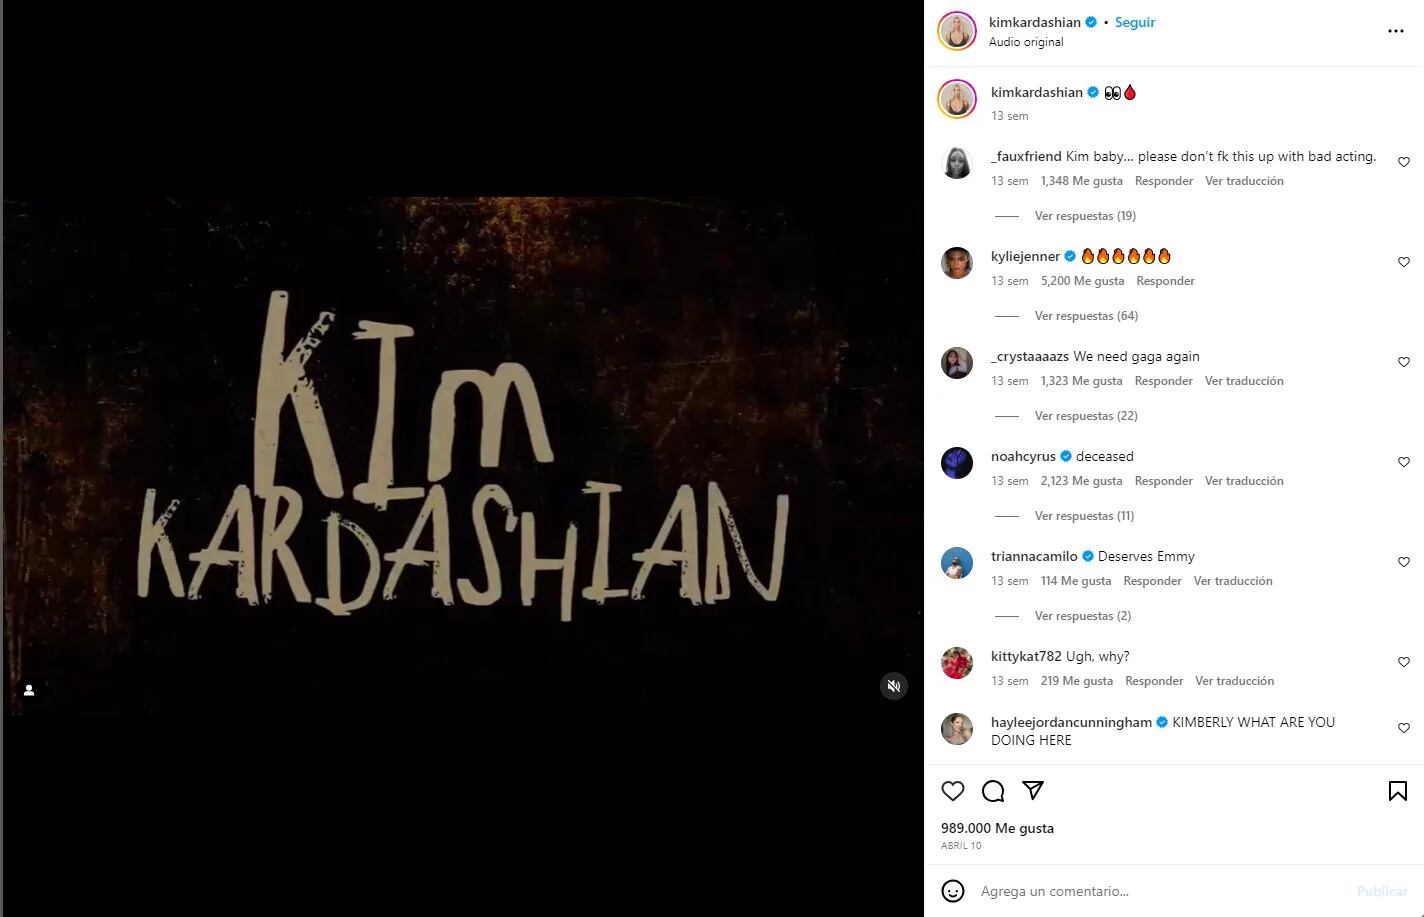 Kim Kardashian subió esta foto poco antes de su debut de American Horror Story. Muchos consideran que se trata de un truco publicitario
Foto: Instagram/Kim Kardashian